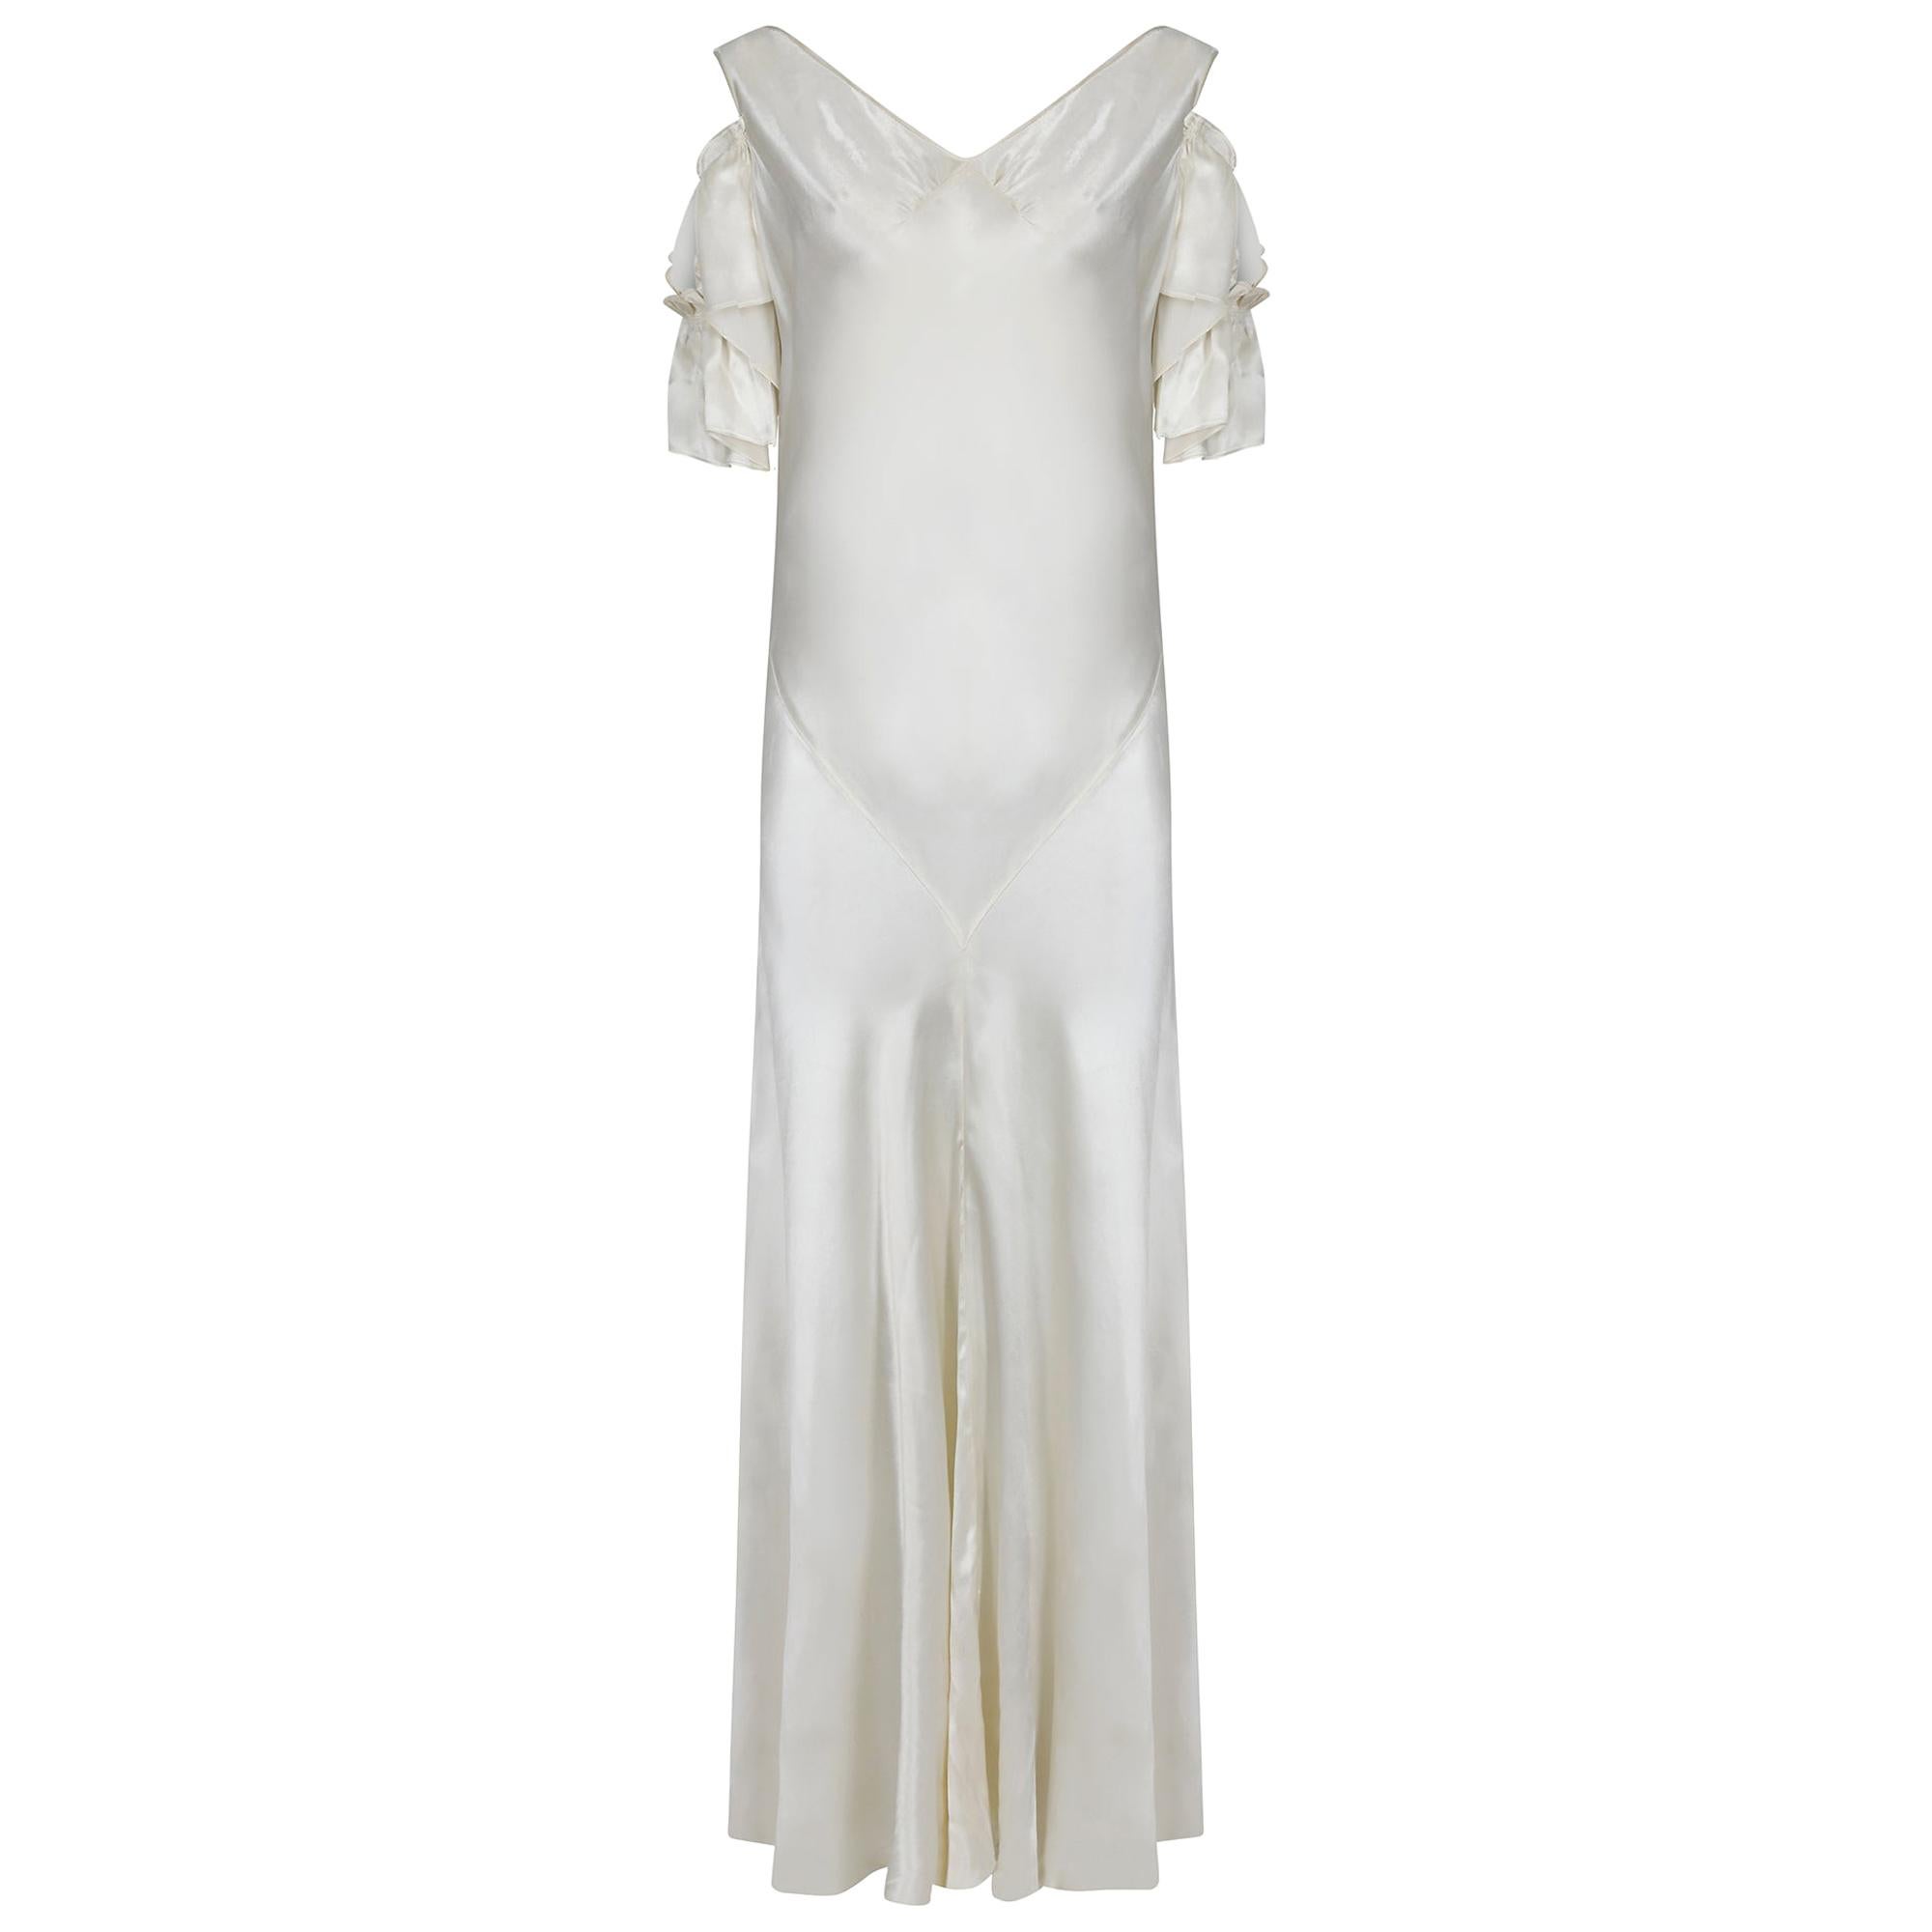 Elfenbeinfarbenes Satin-Hochzeitskleid aus den 1930er Jahren